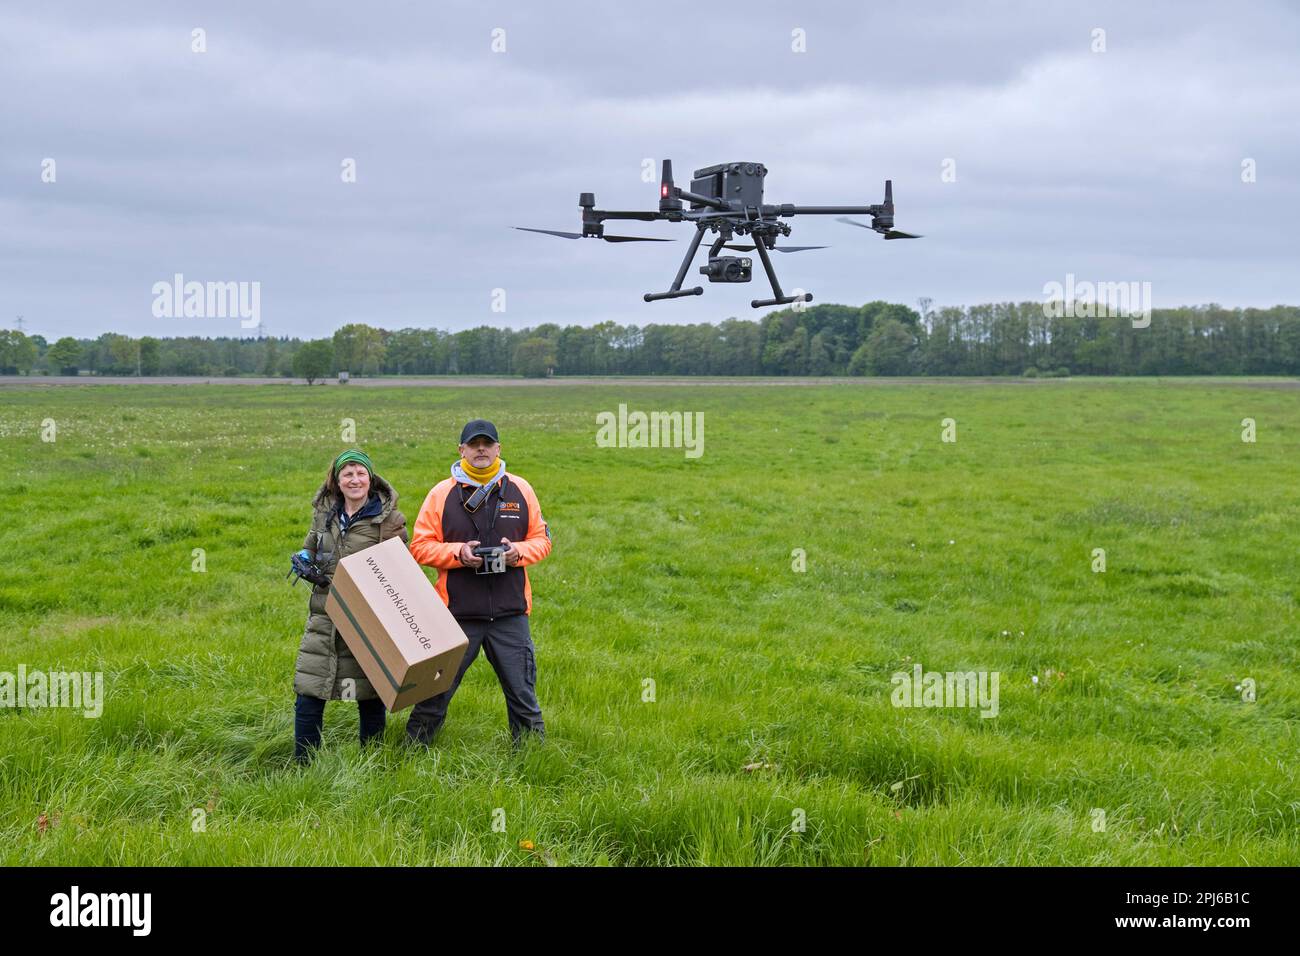 Team di soccorso che gestisce il drone professionale per individuare i caprioli nascosti nell'erba con termocamera prima di tagliare i prati in primavera Foto Stock